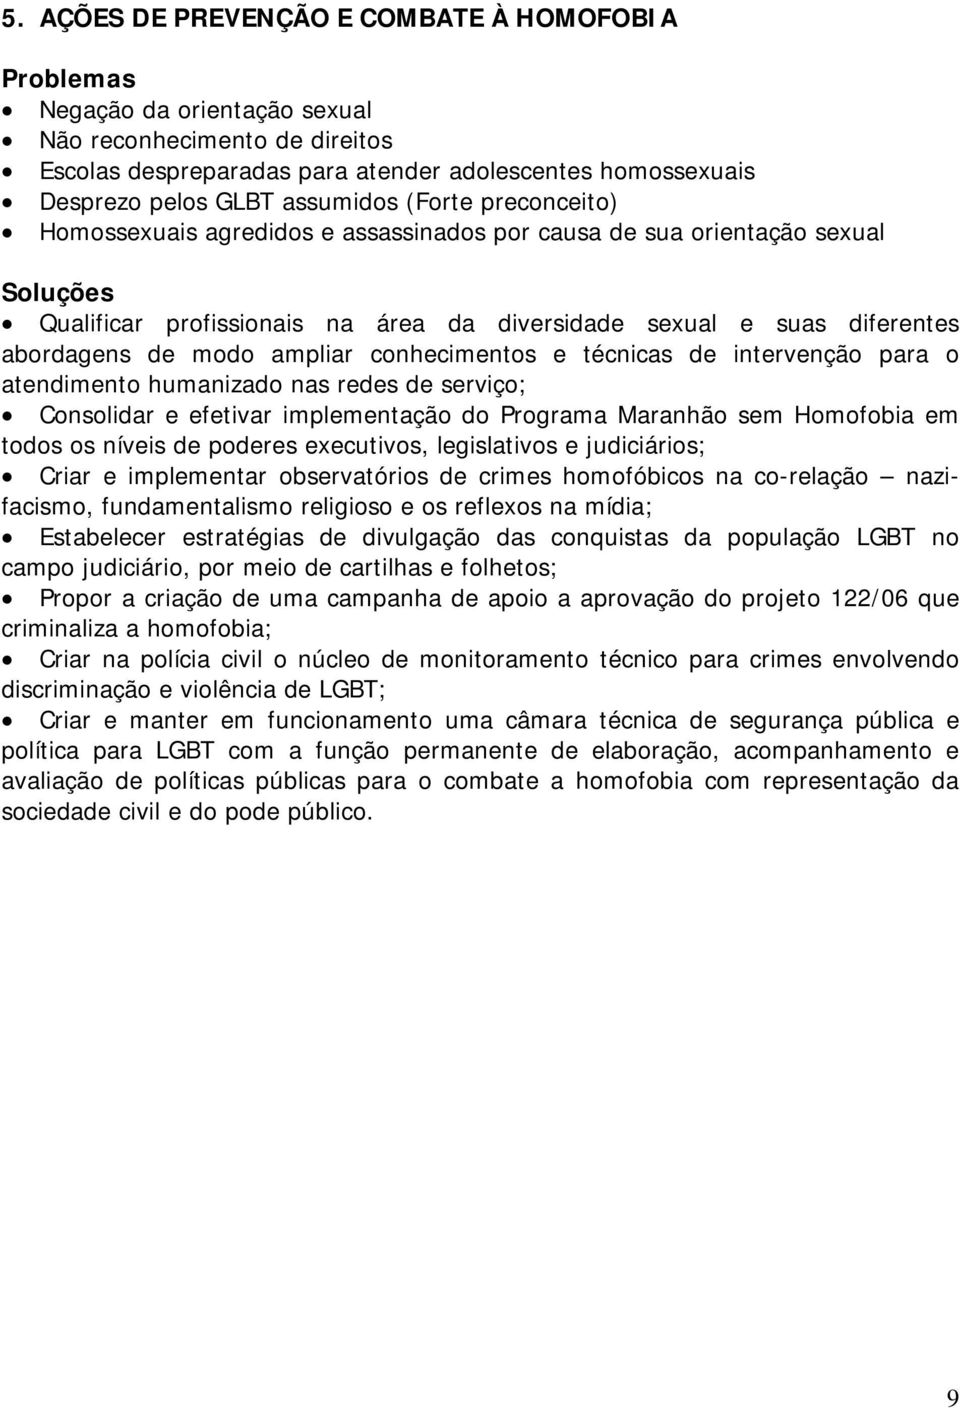 conhecimentos e técnicas de intervenção para o atendimento humanizado nas redes de serviço; Consolidar e efetivar implementação do Programa Maranhão sem Homofobia em todos os níveis de poderes